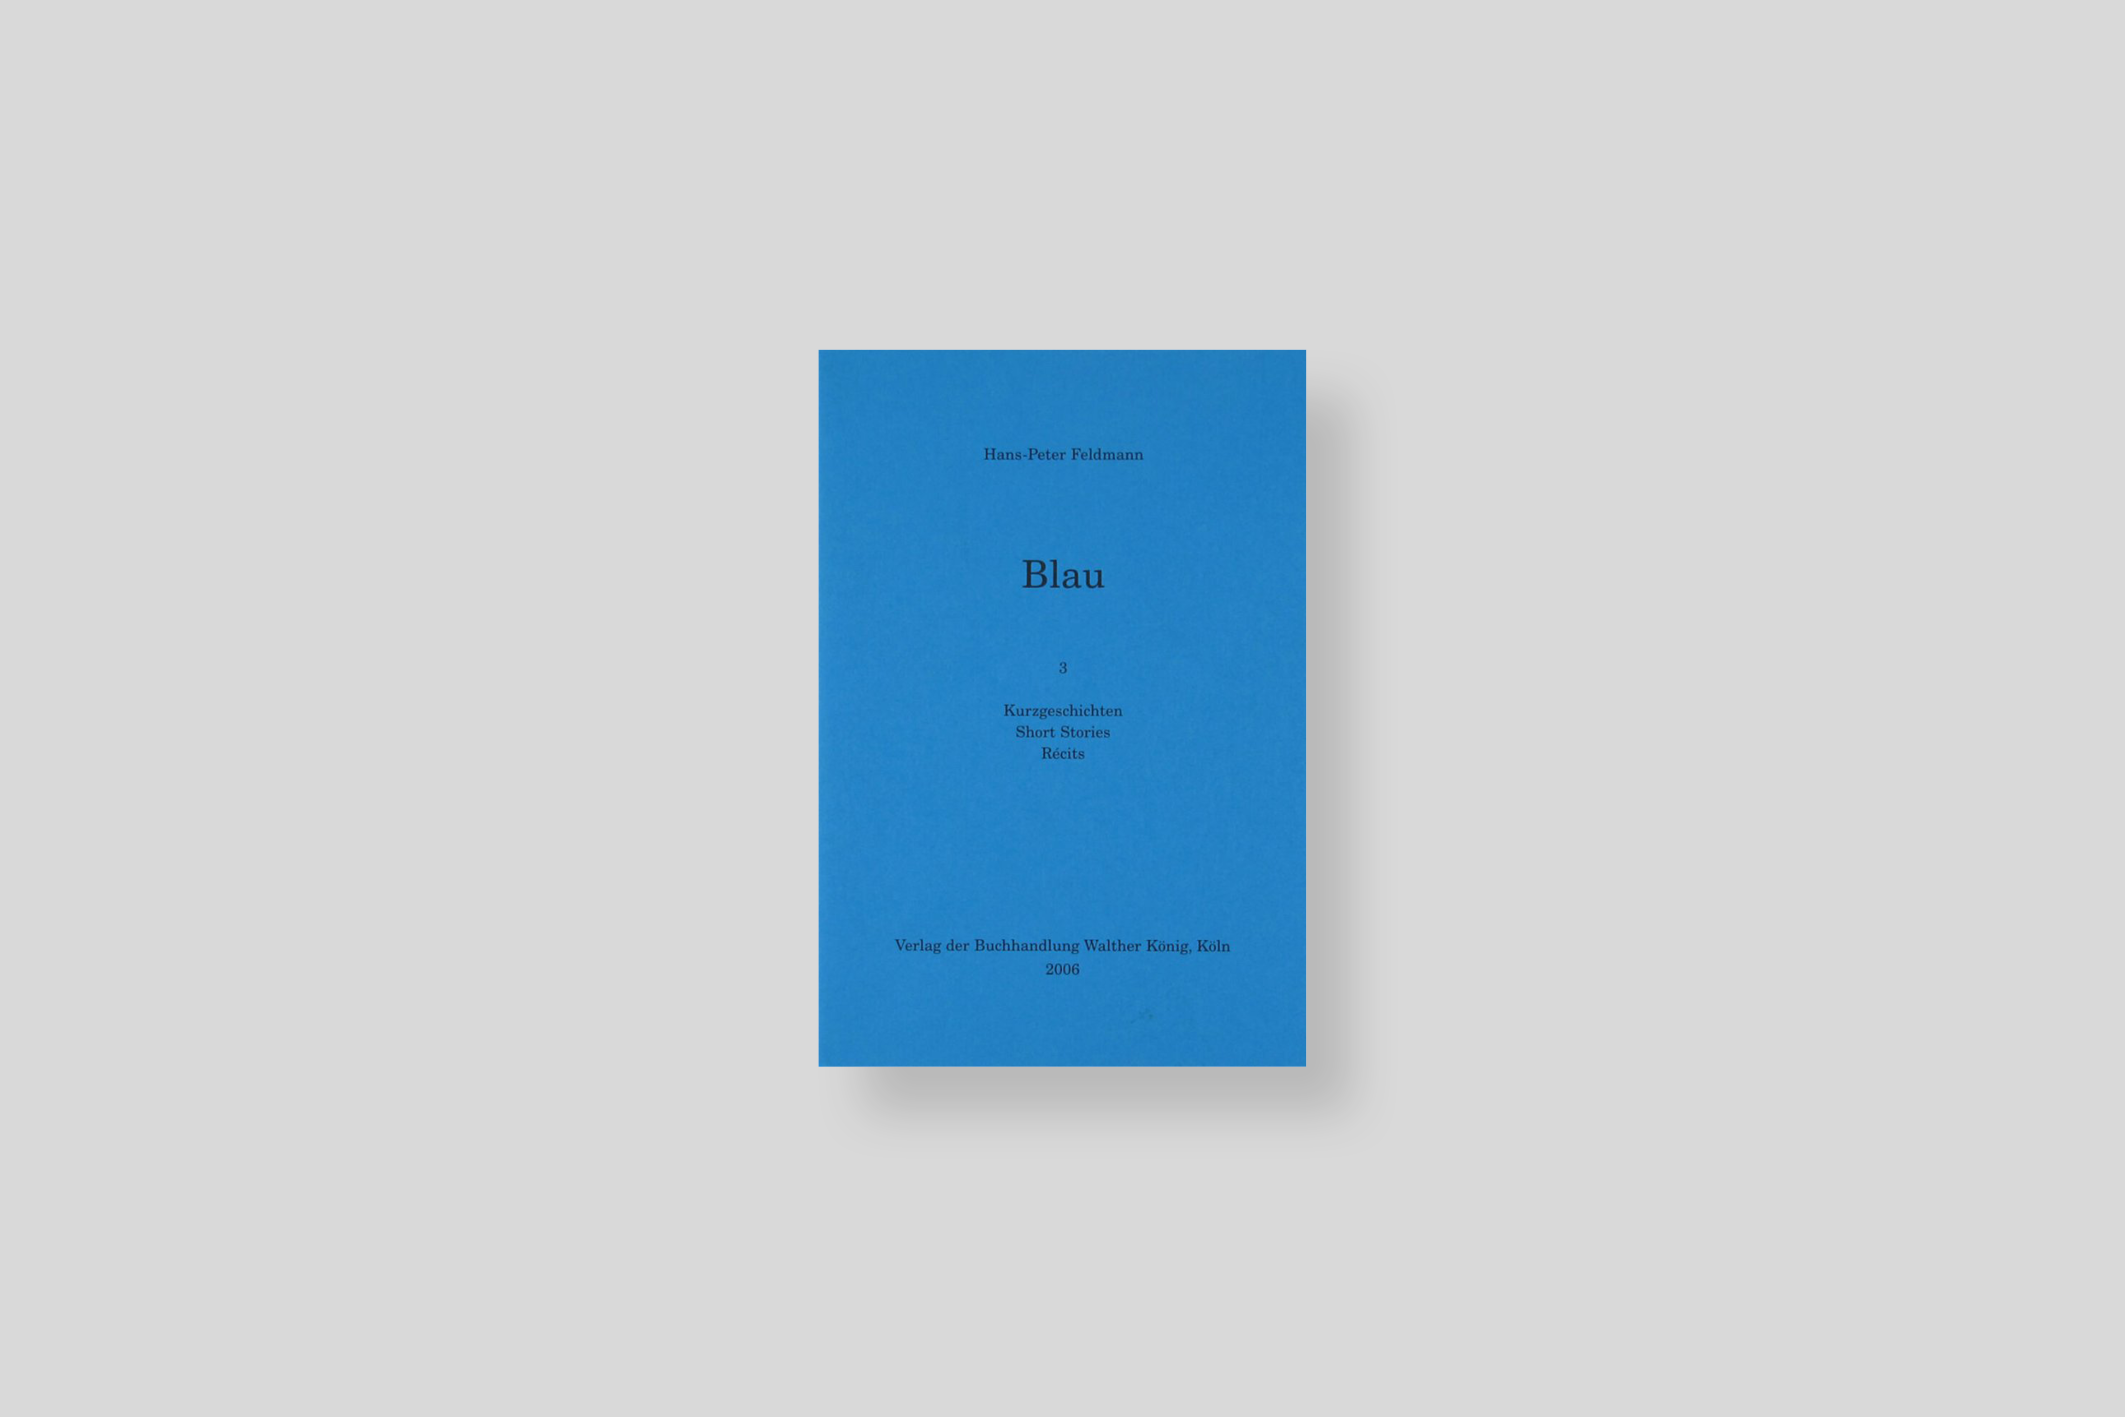 blau-feldman-buchhandlung-walther-konig-cover